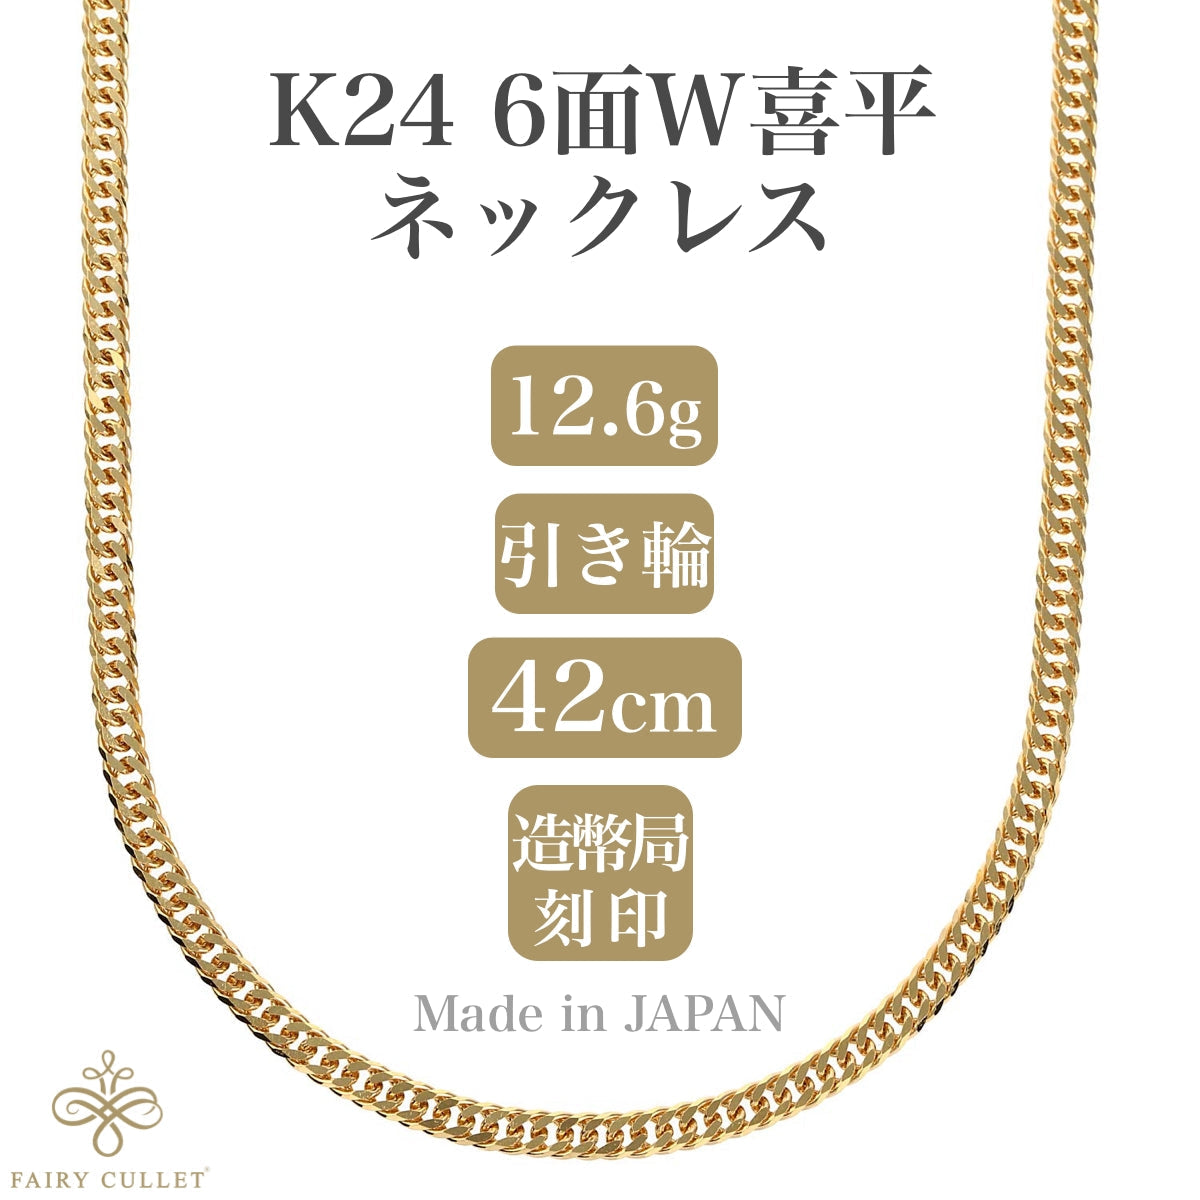 24金ネックレス K24 6面W喜平チェーン 日本製 純金 検定印 12.6g 42cm 引き輪